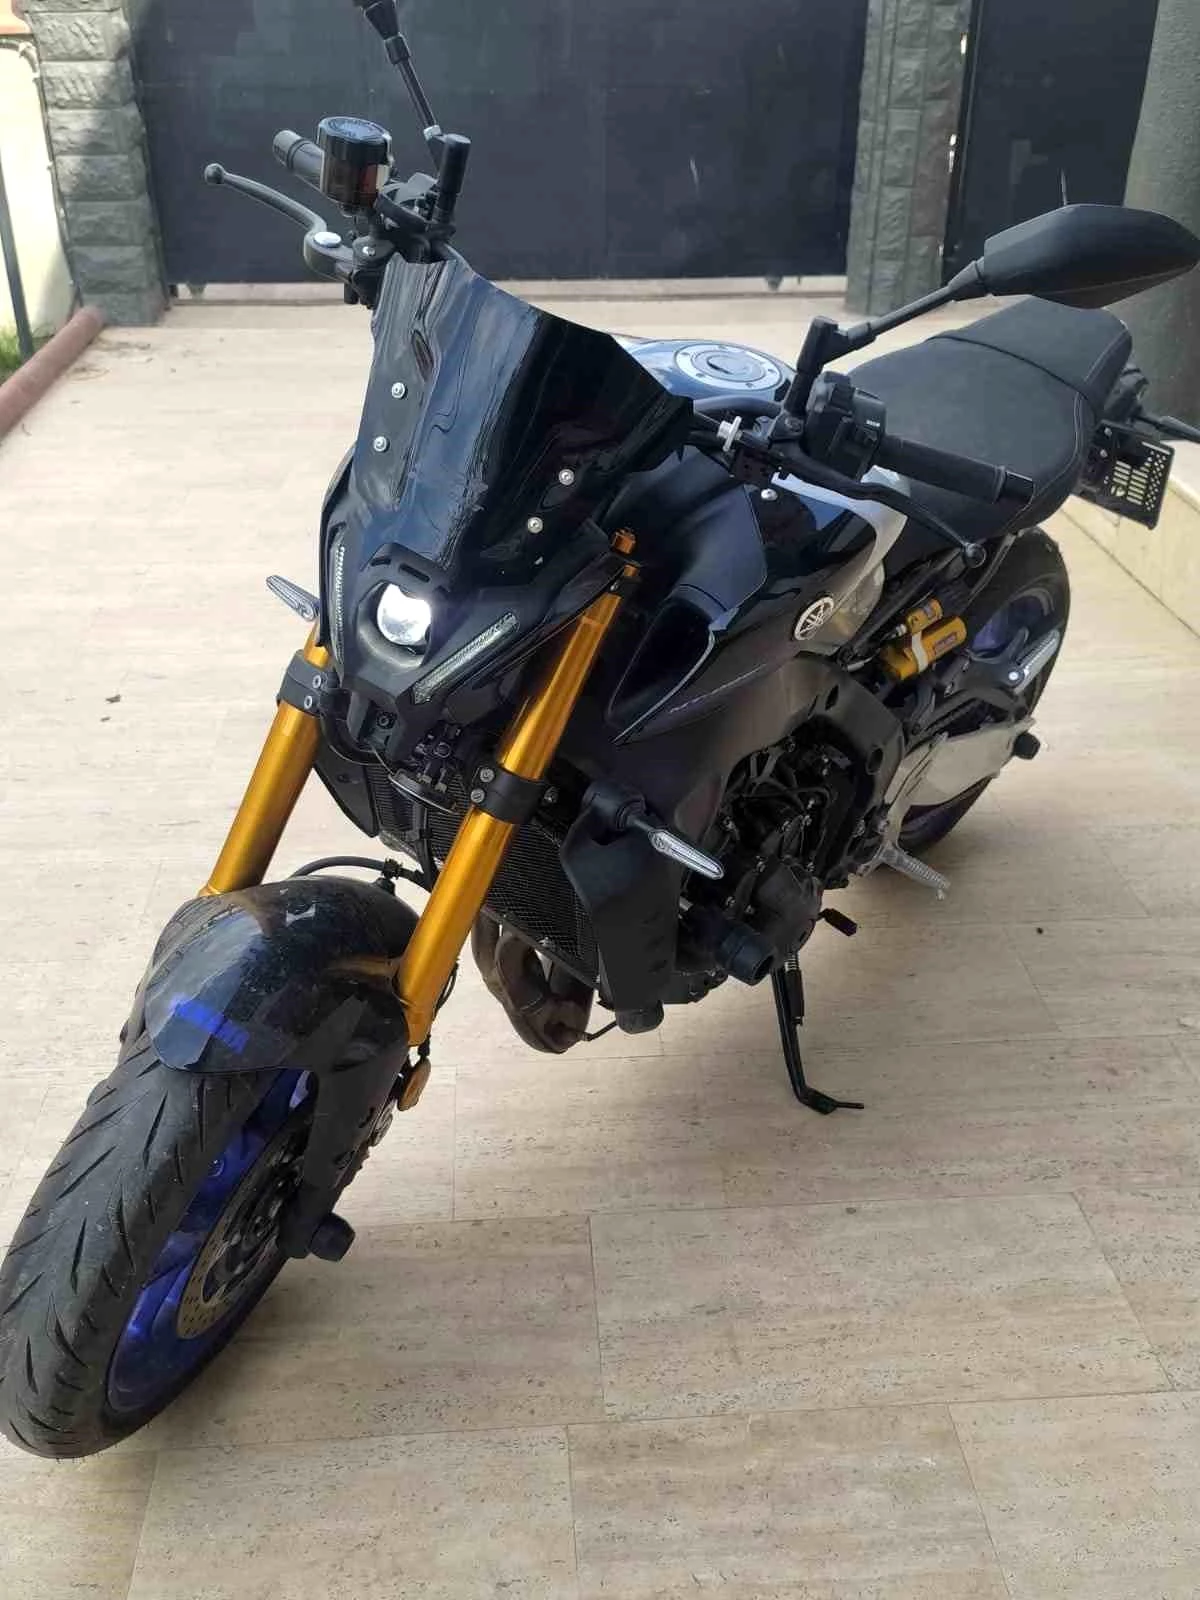 Karacabey'de Hırsız Çalıntı Motosikletle Başka Bir Motosikleti Çaldı